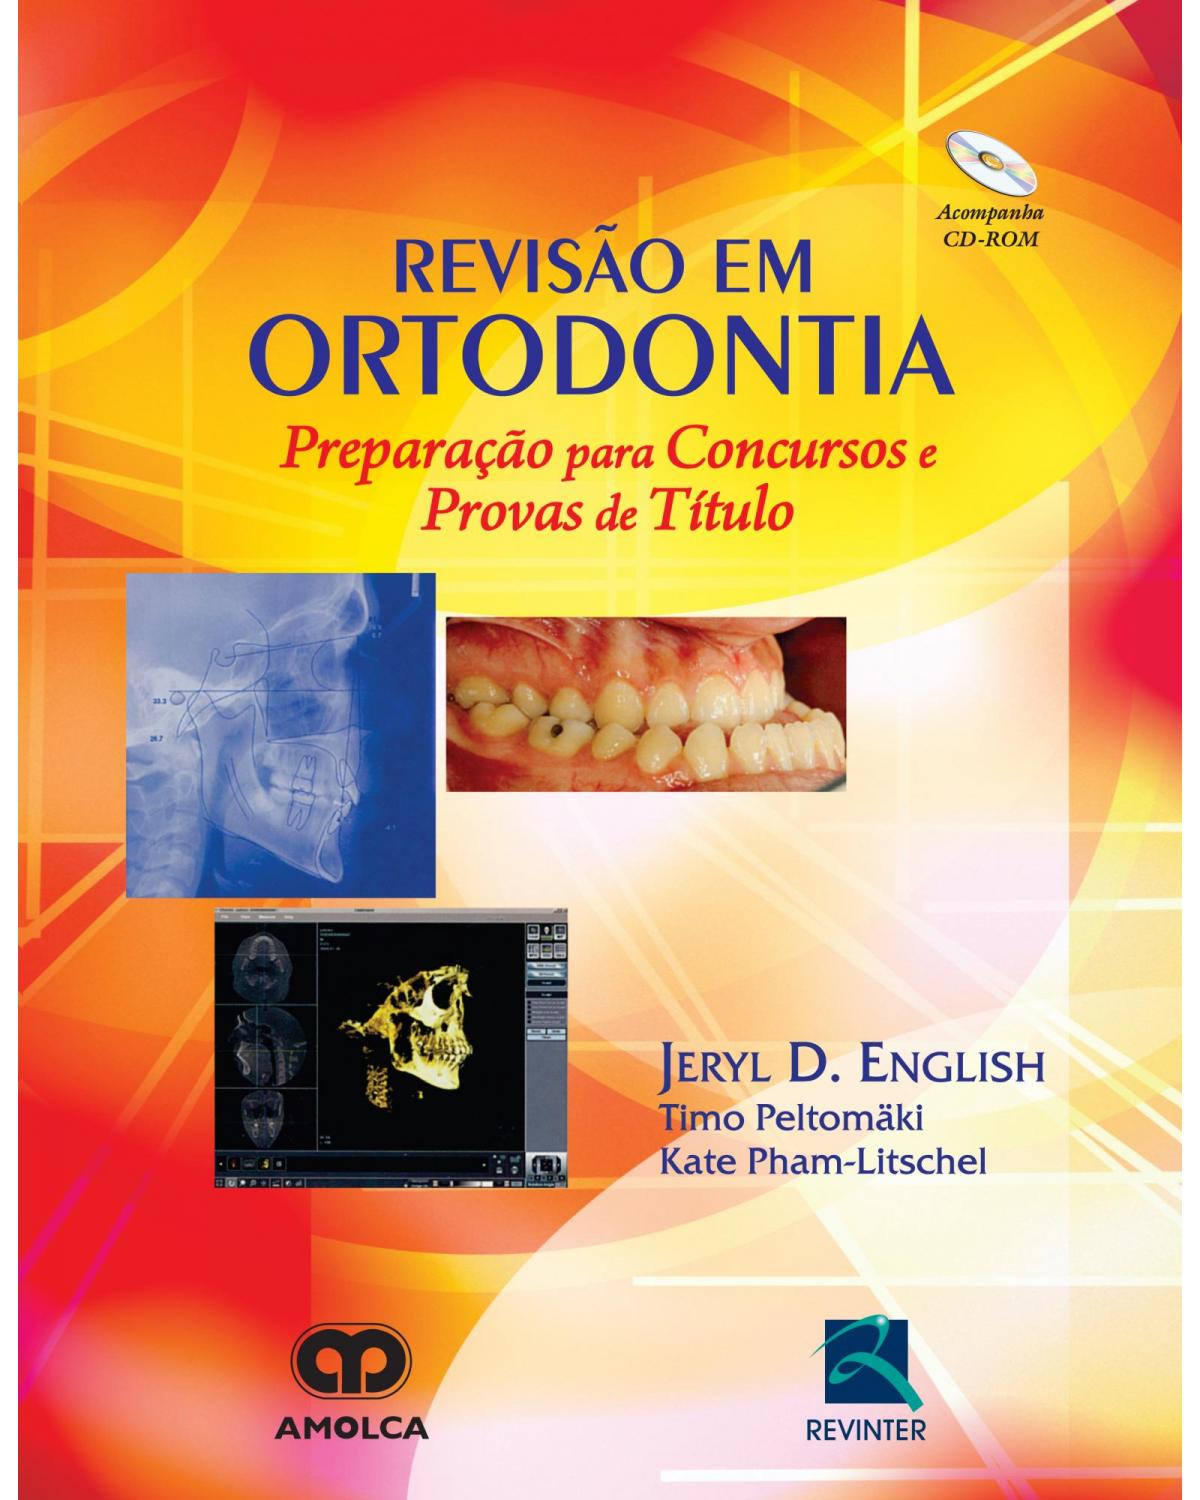 Revisão em ortodontia - preparação para concursos e provas de título - 1ª Edição | 2012